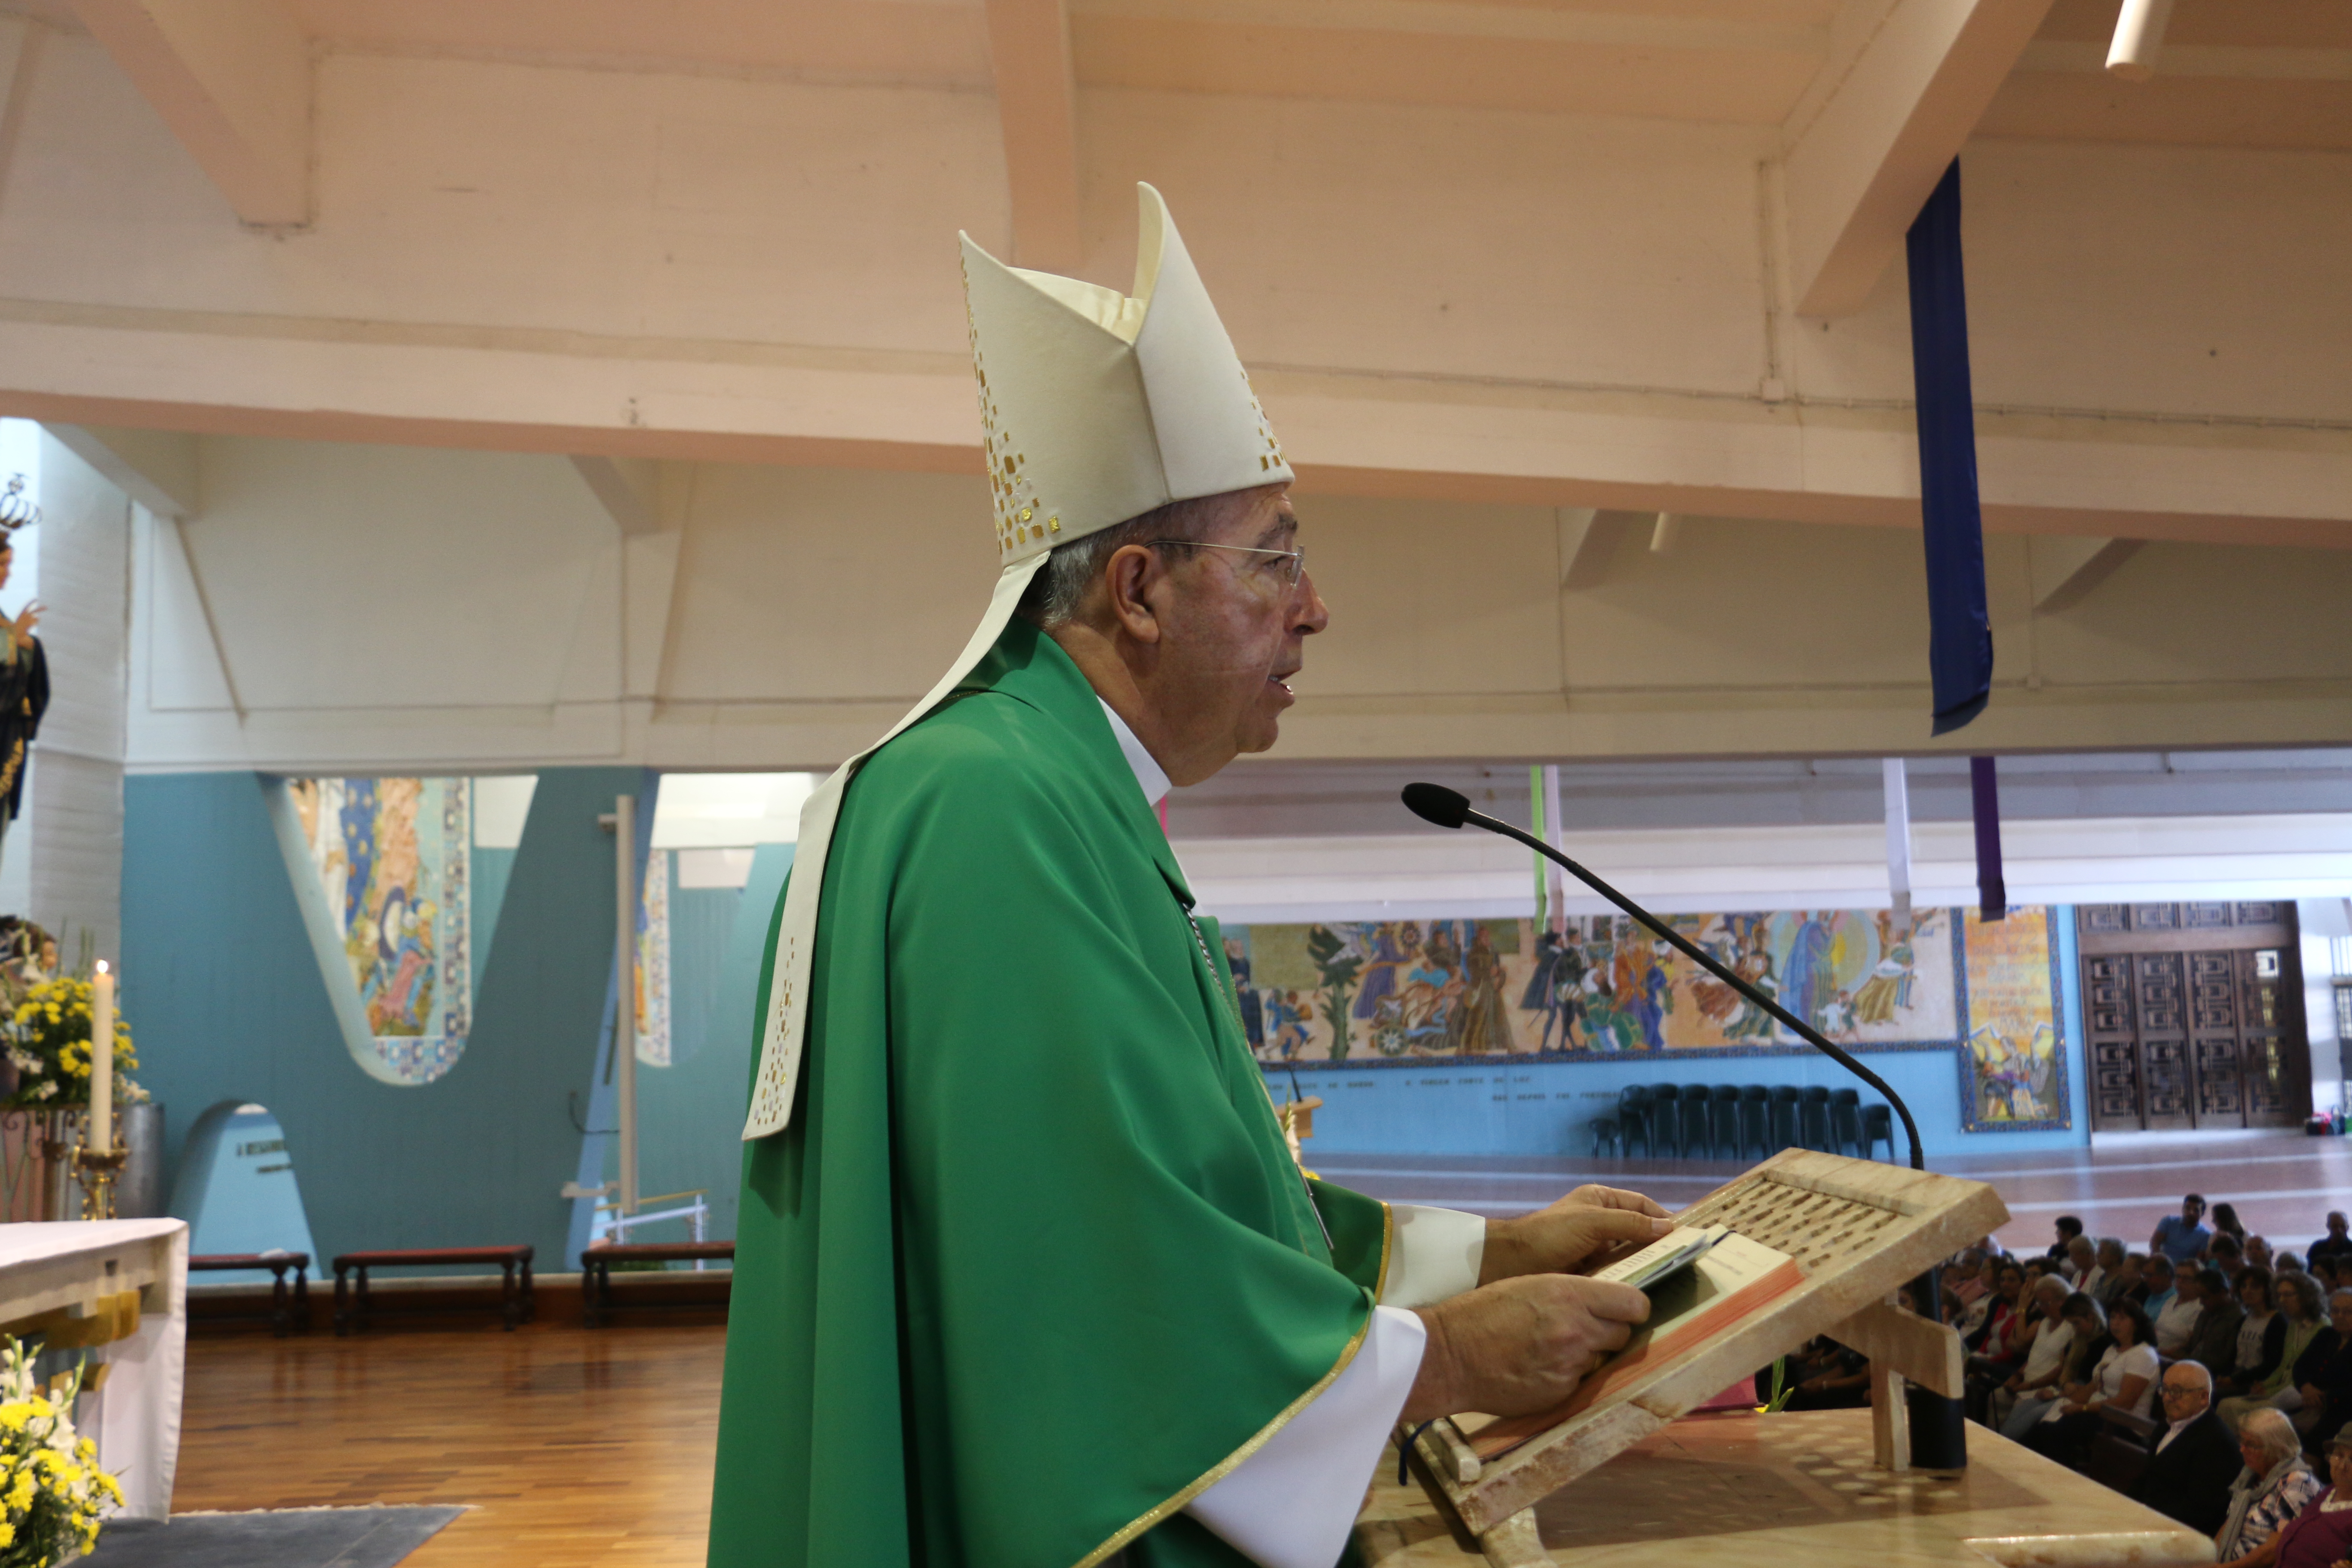 Arcebispo de Braga fala ao coração dos padres em nota de abertura do Ano Pastoral 2020/21